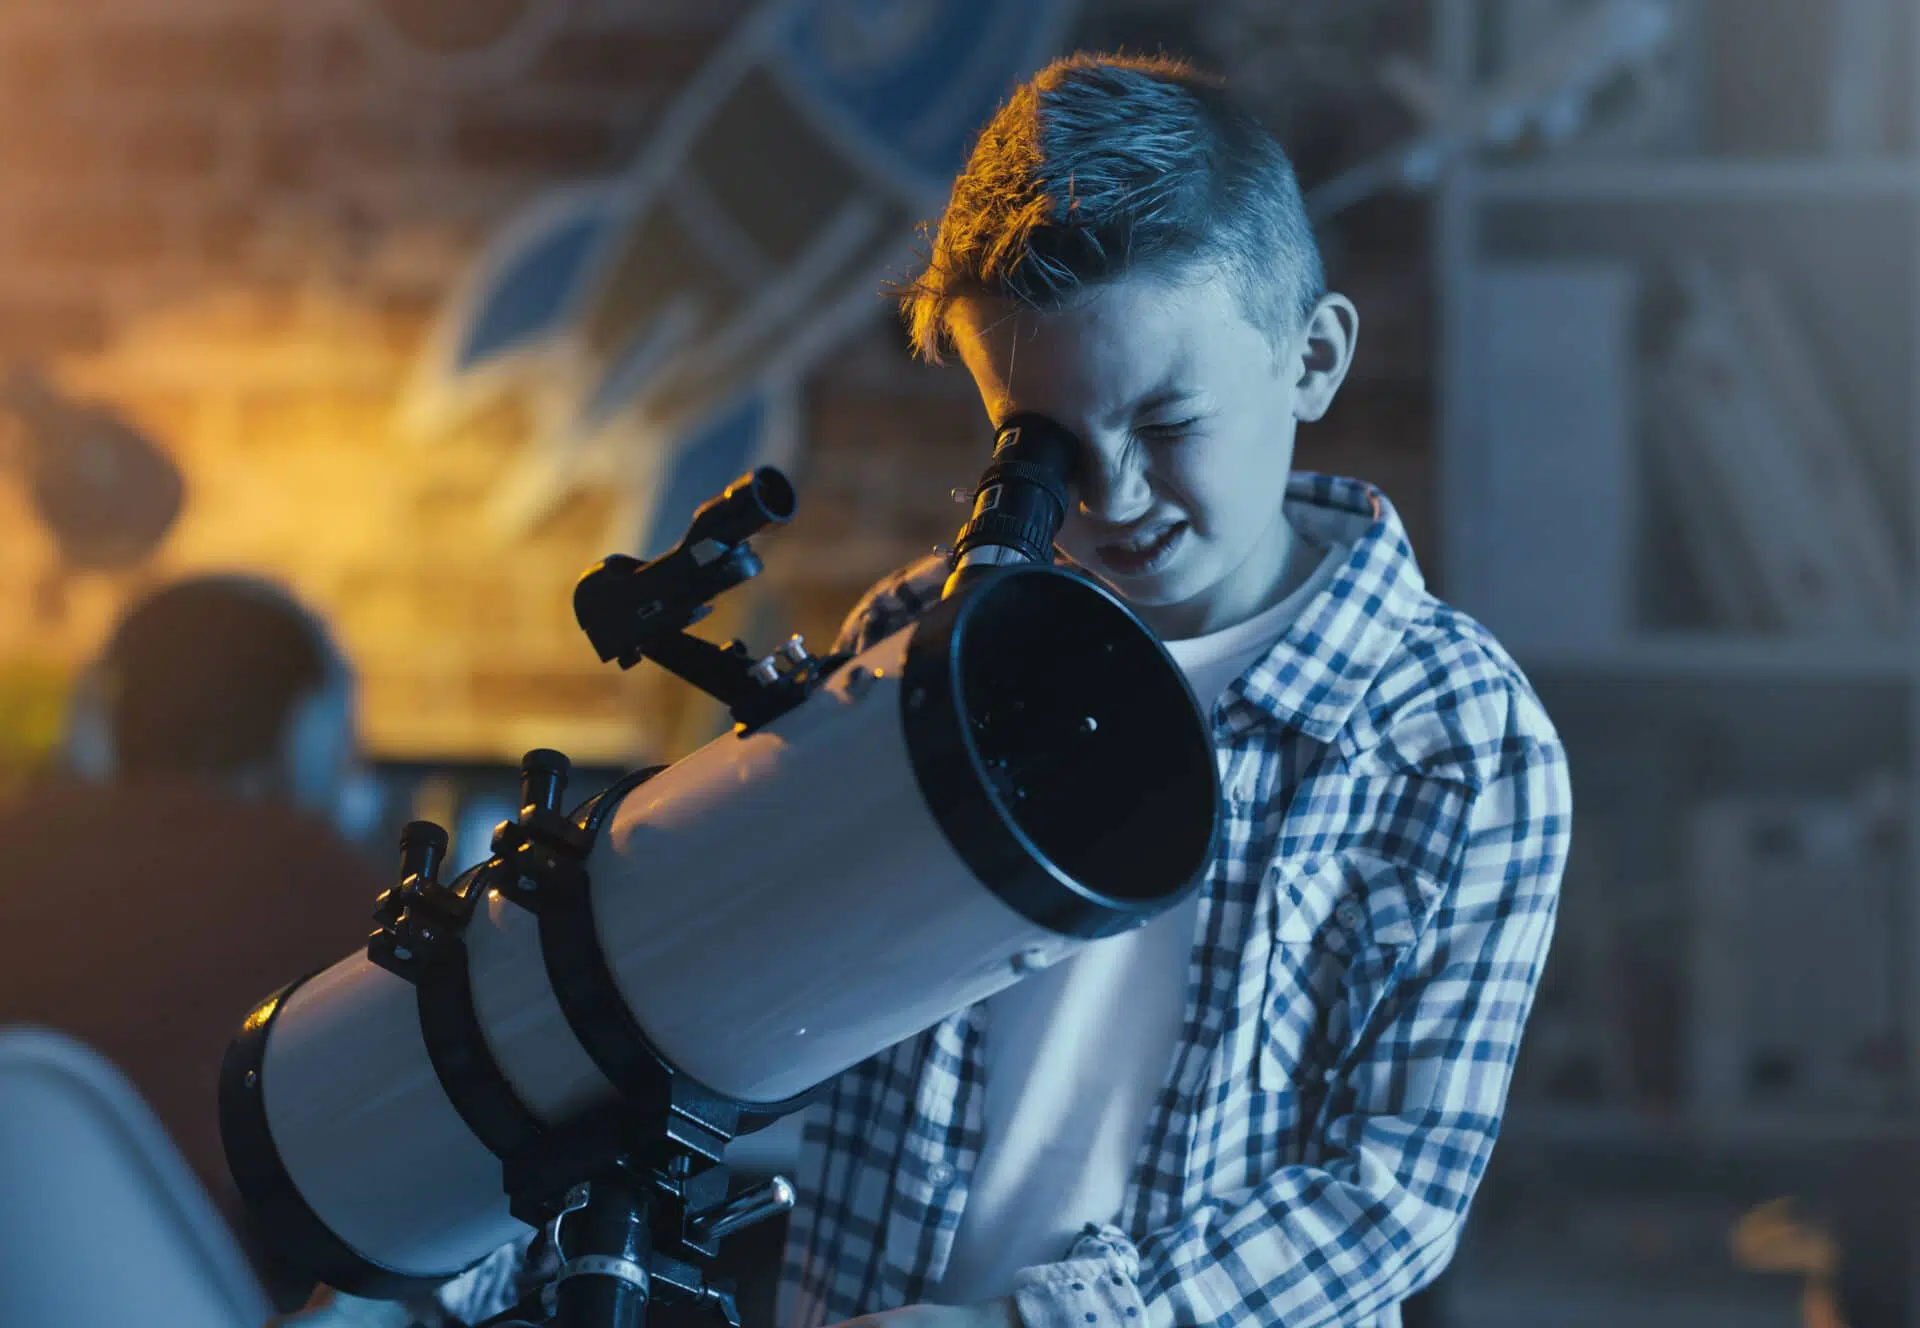 Jeune garçon qui regarde dans un télescope en soirée.